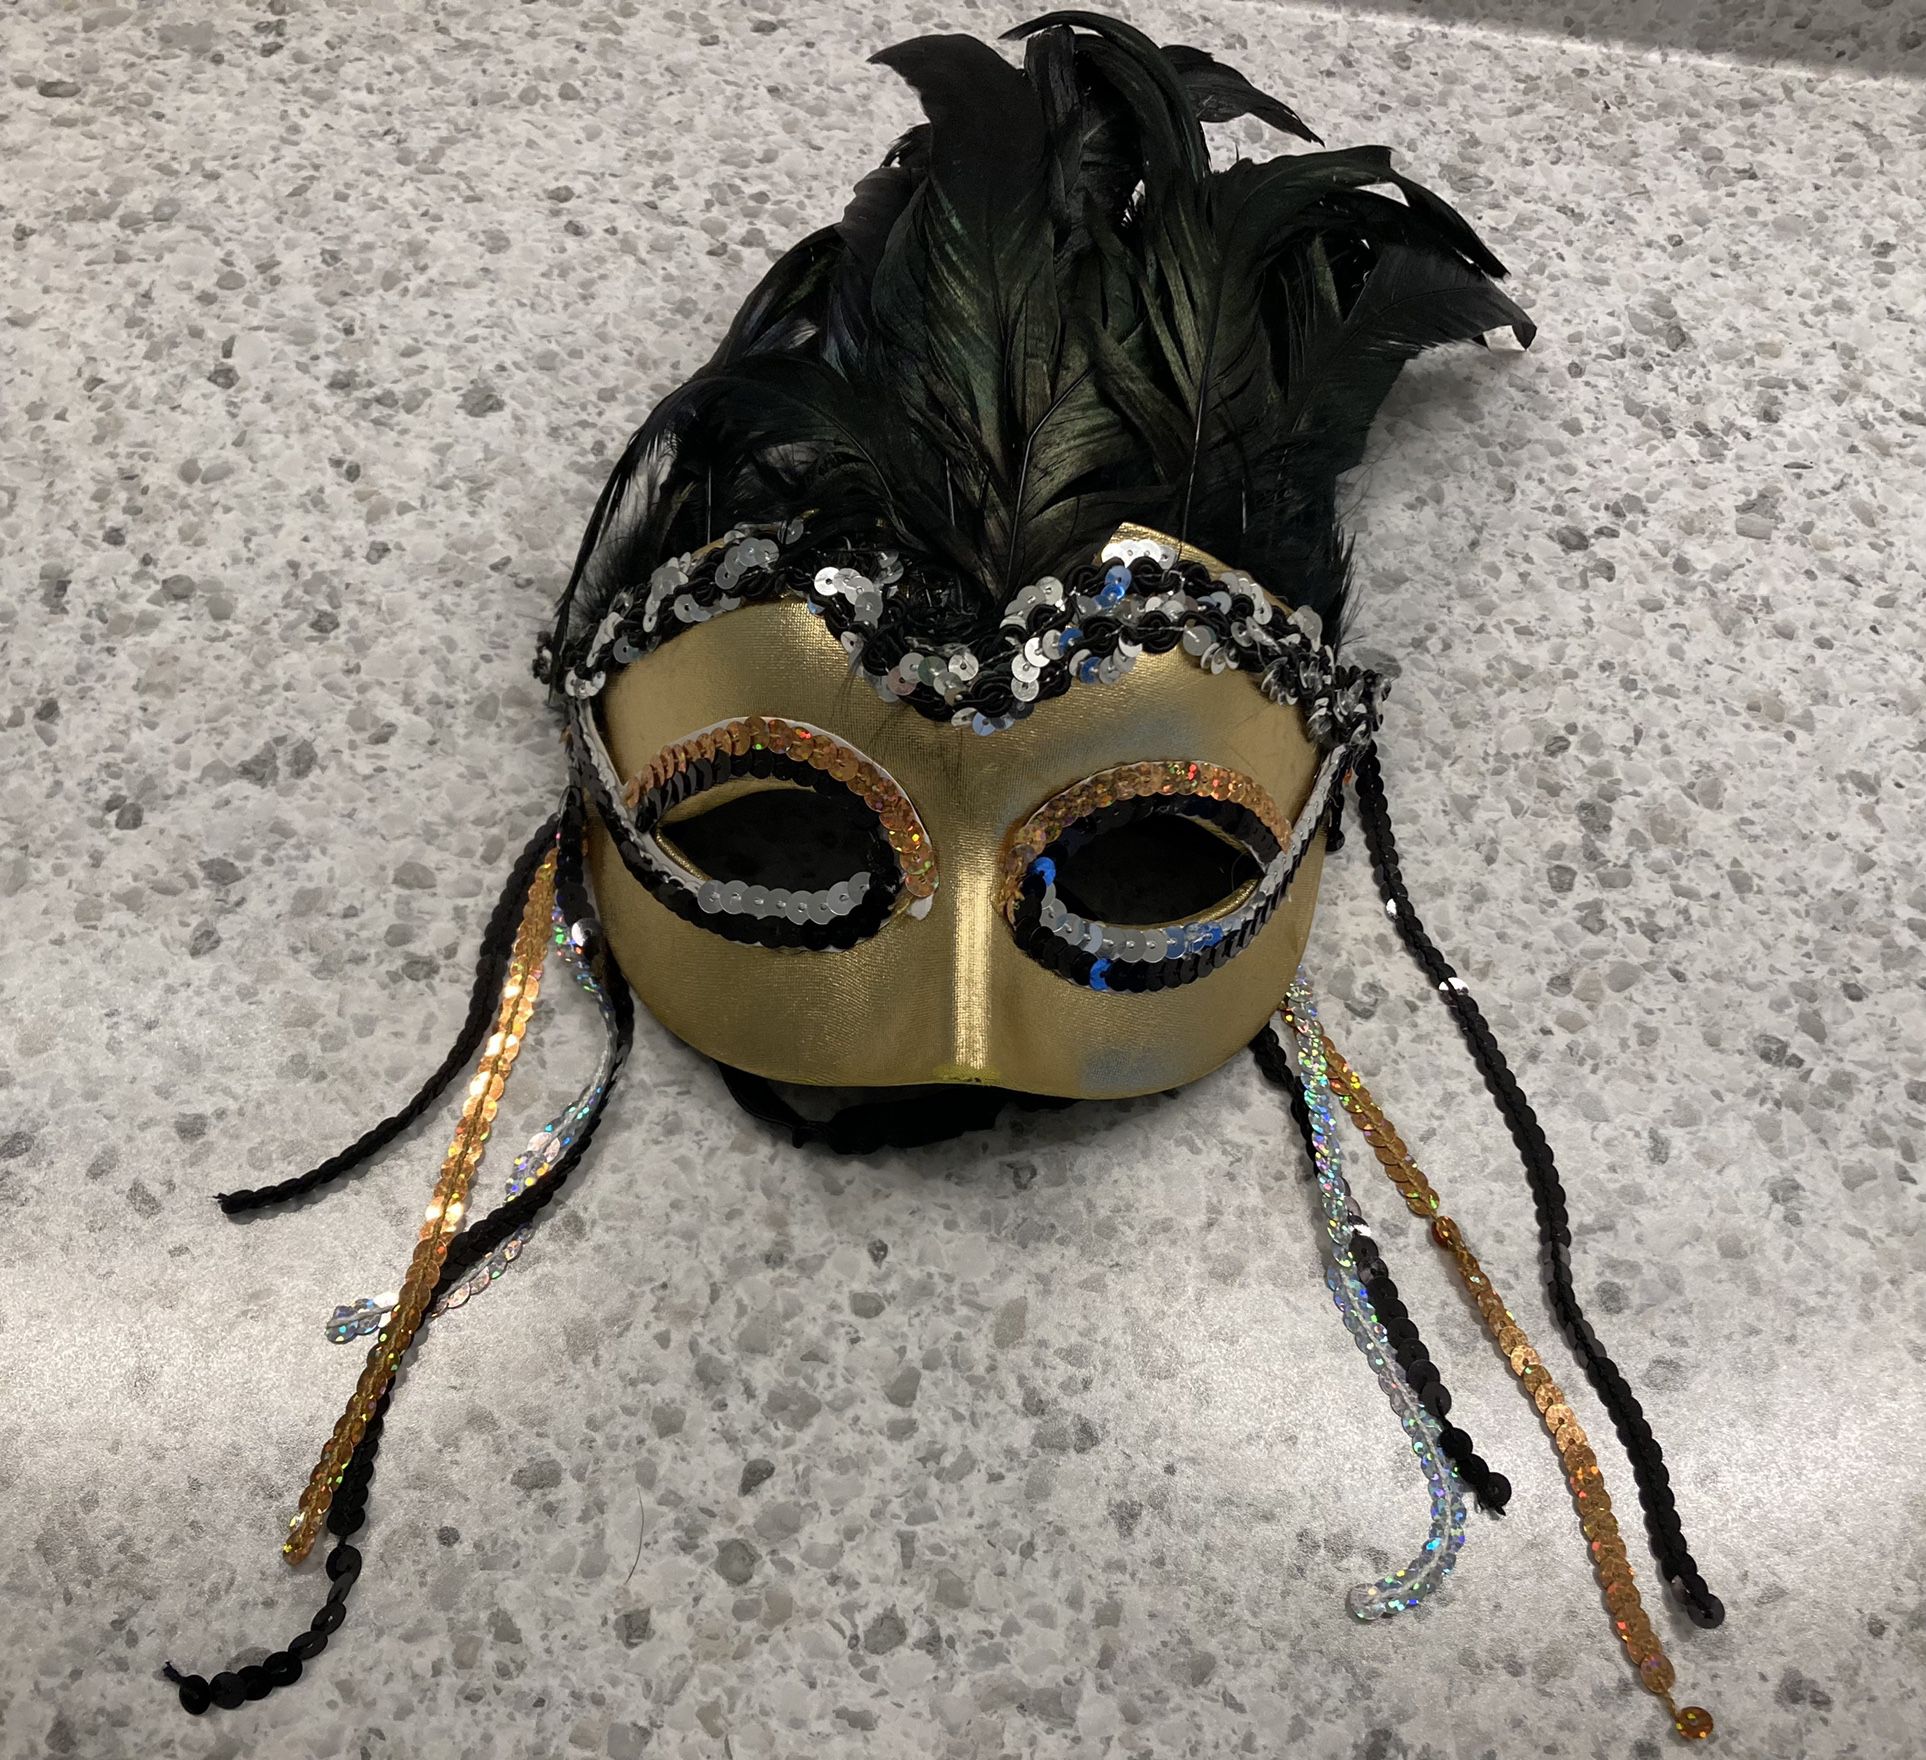 Halloween Mask 